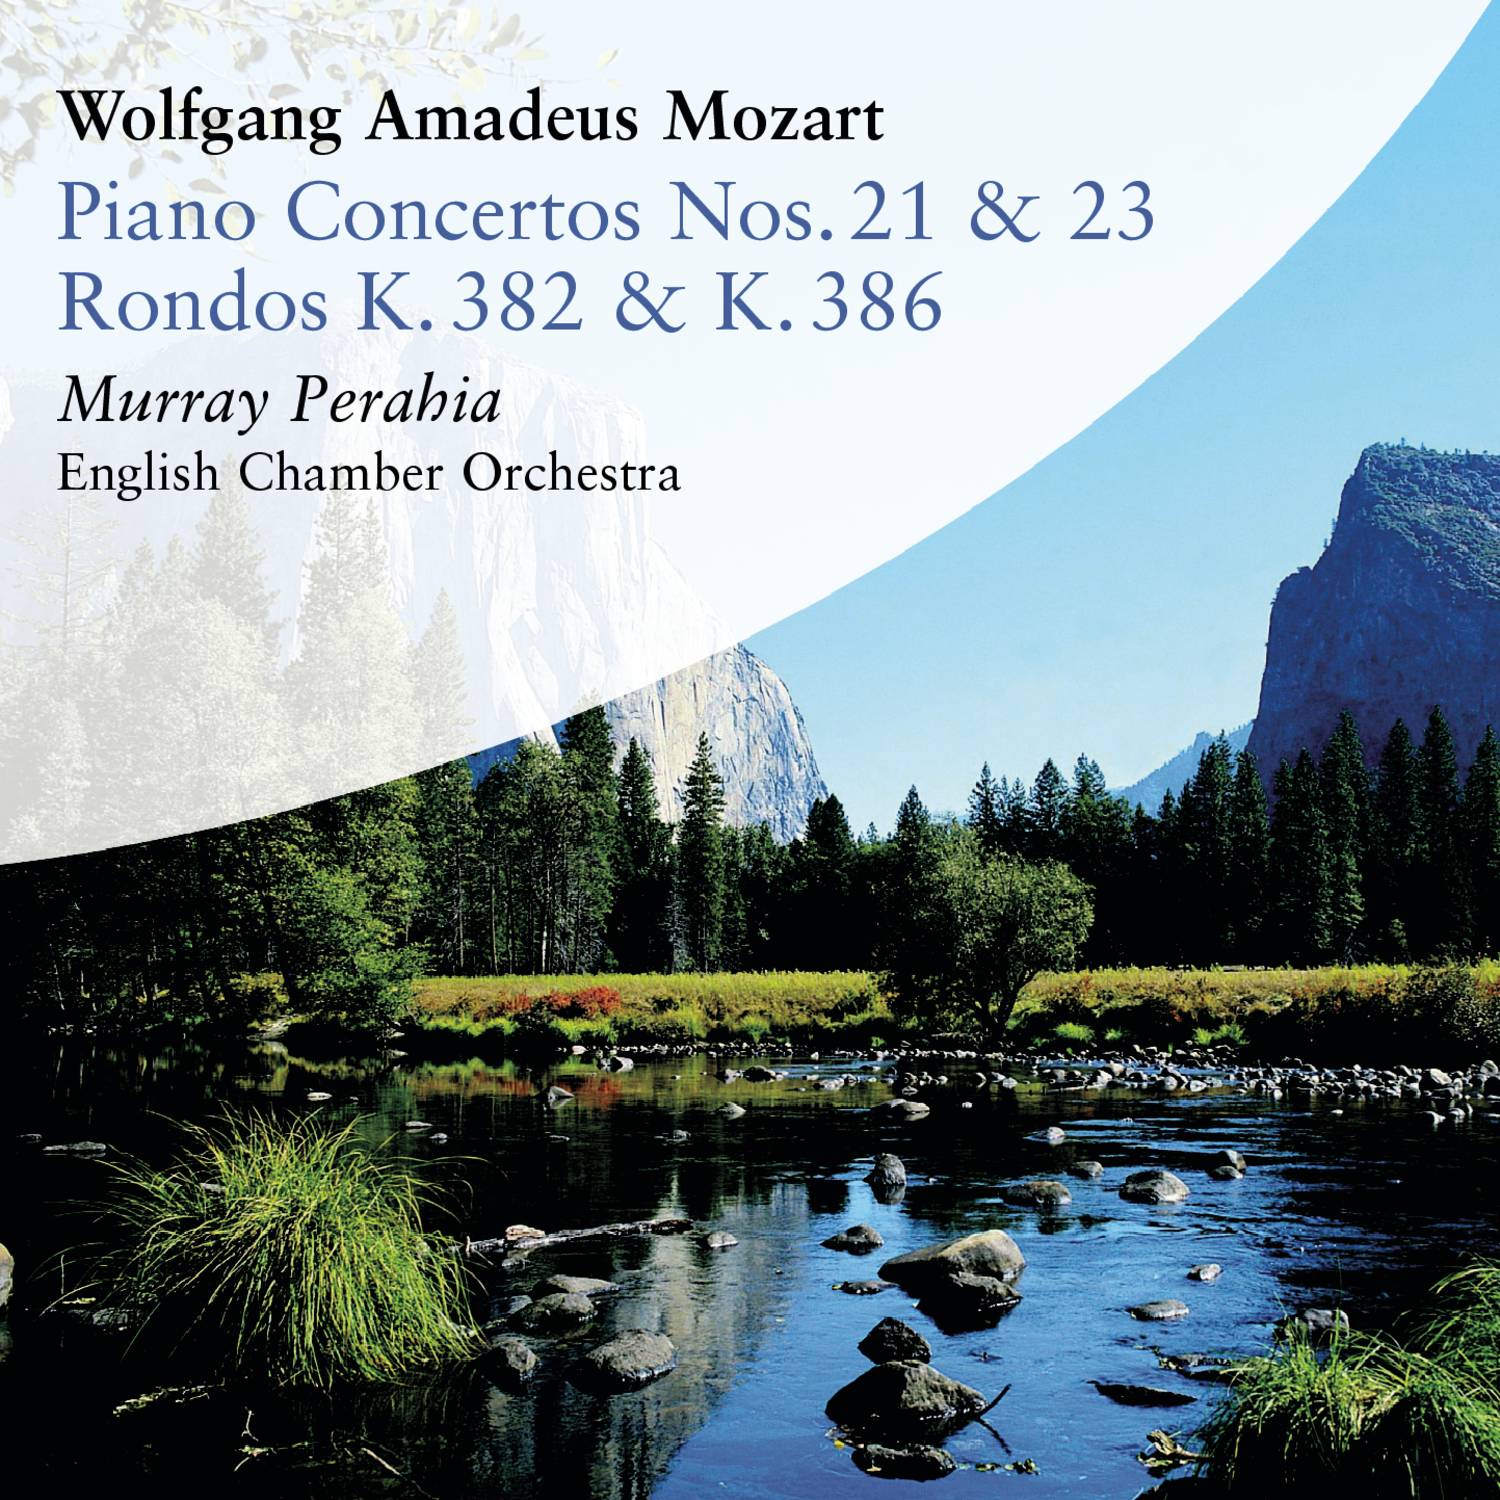 Concerto No. 23 in A Major for Piano and Orchestra, K. 488: II. Adagio